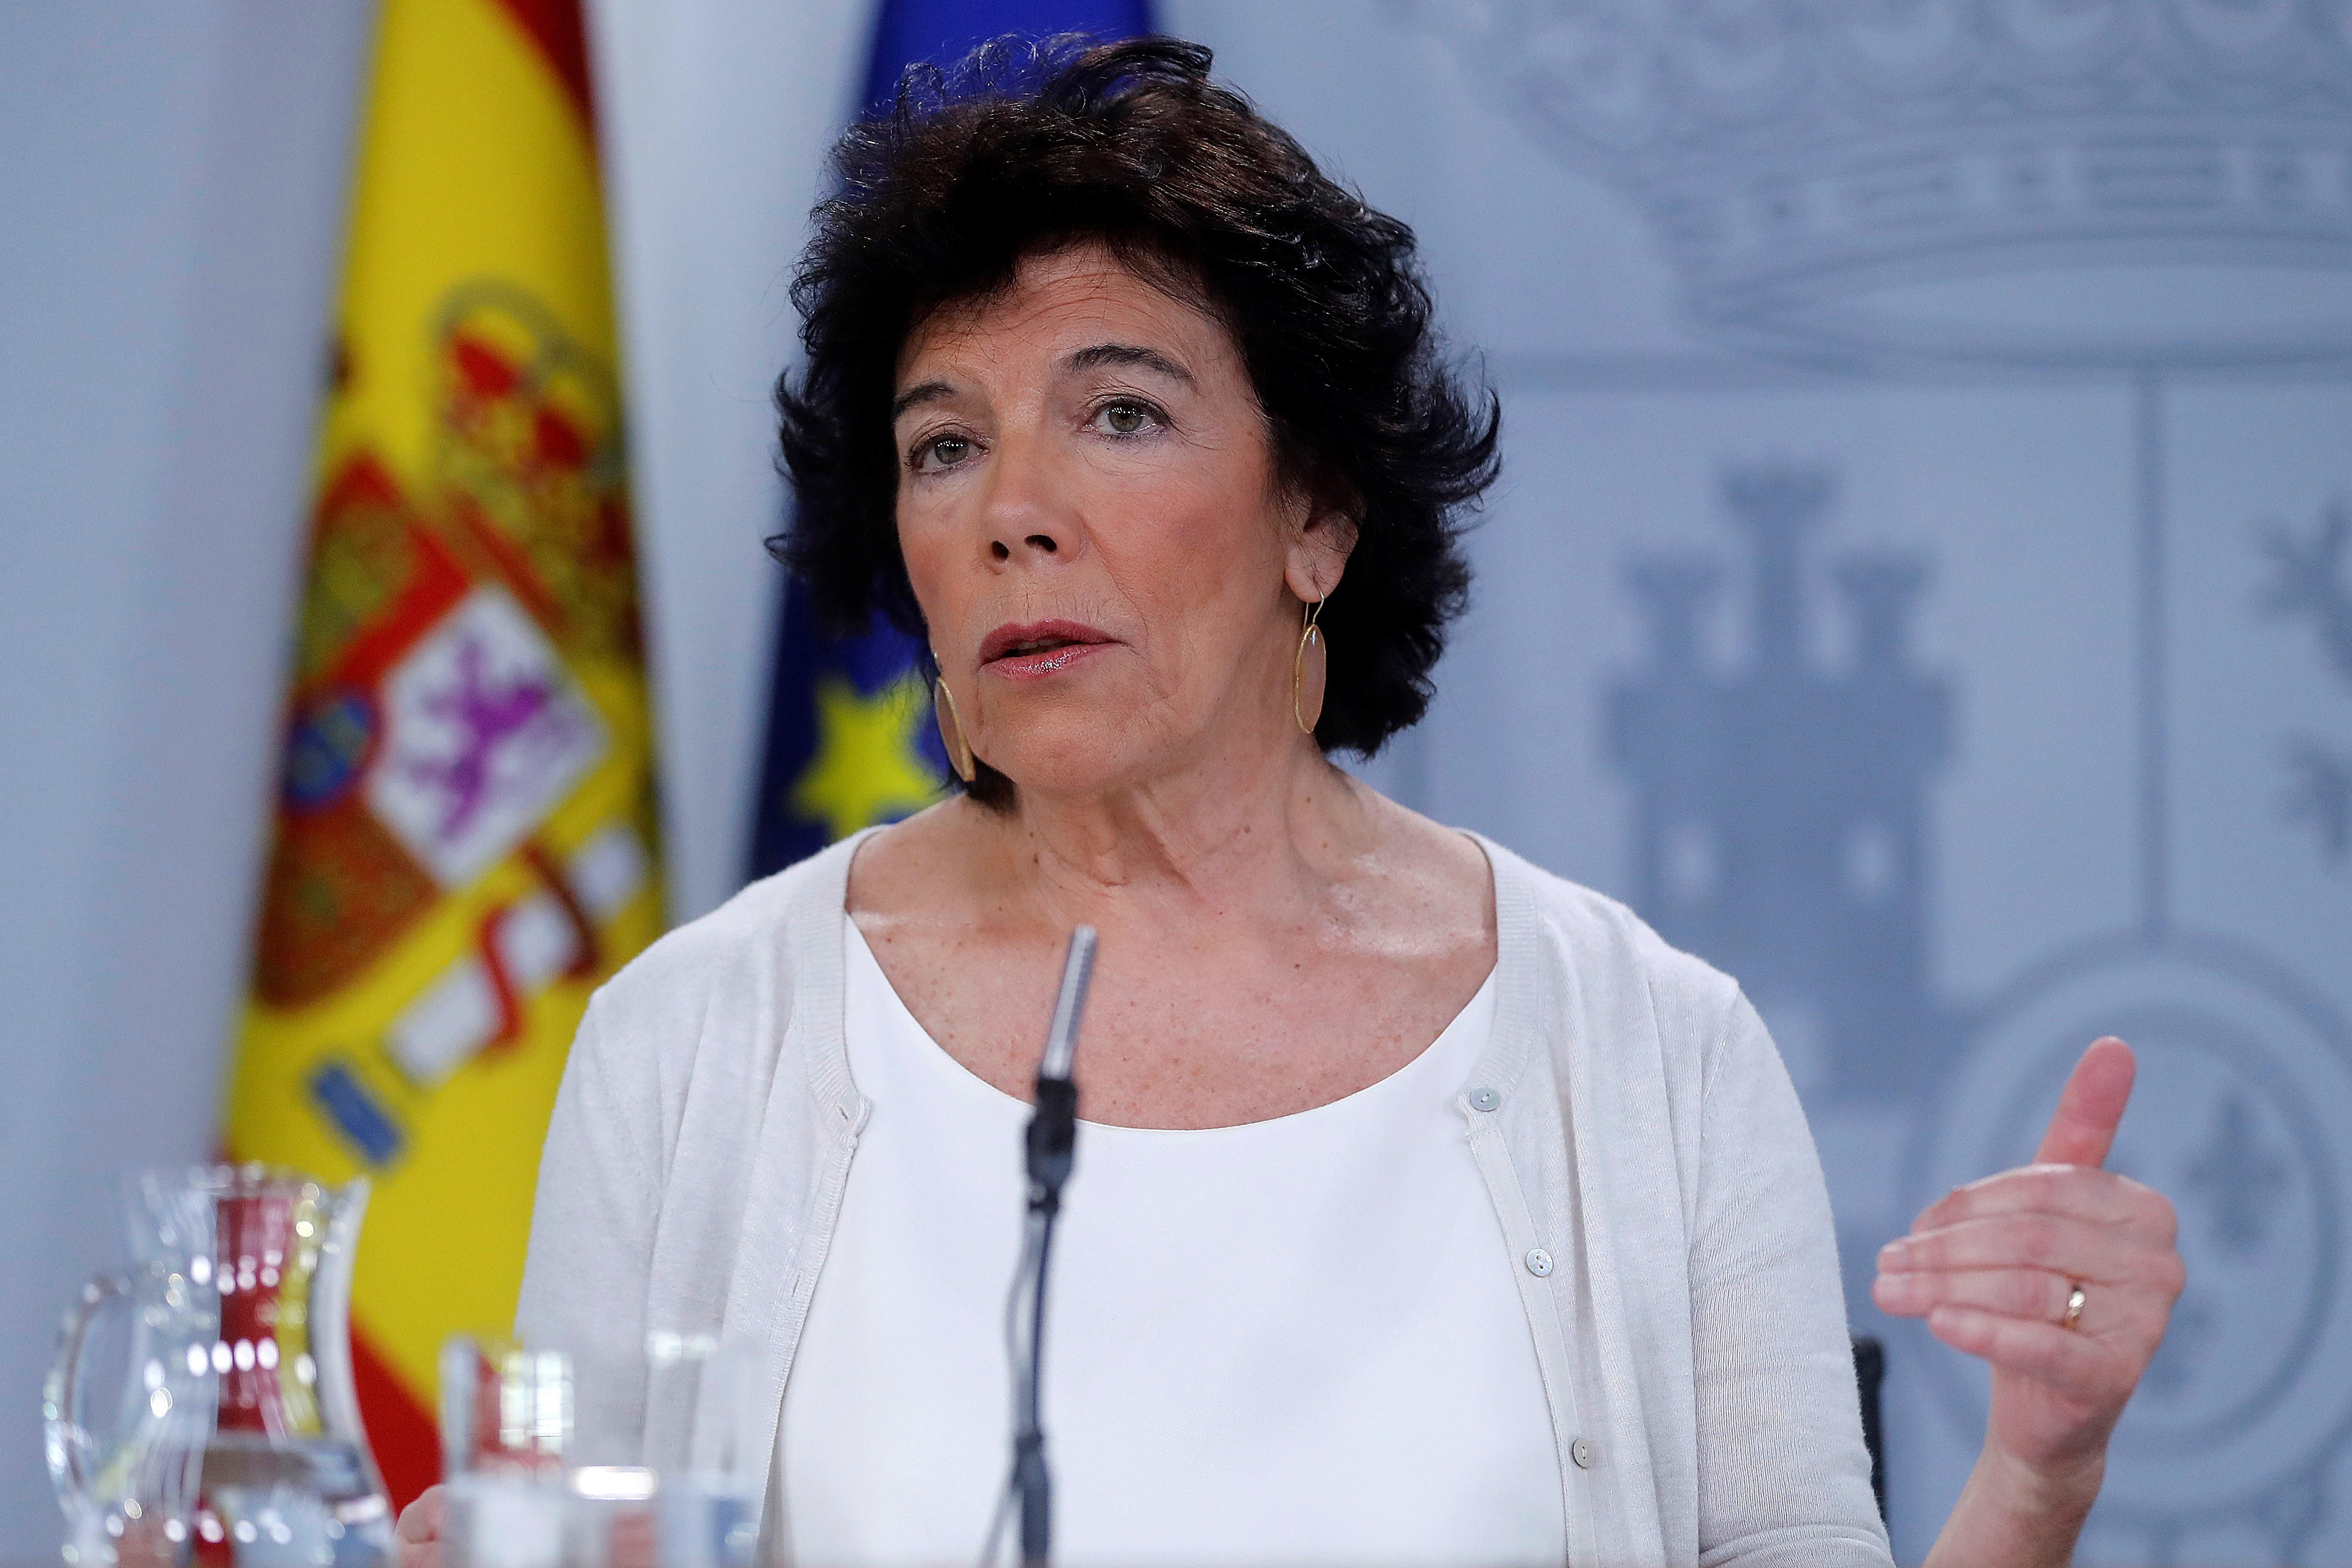 El govern espanyol insisteix en la línia vermella: cap tracte amb independentistes